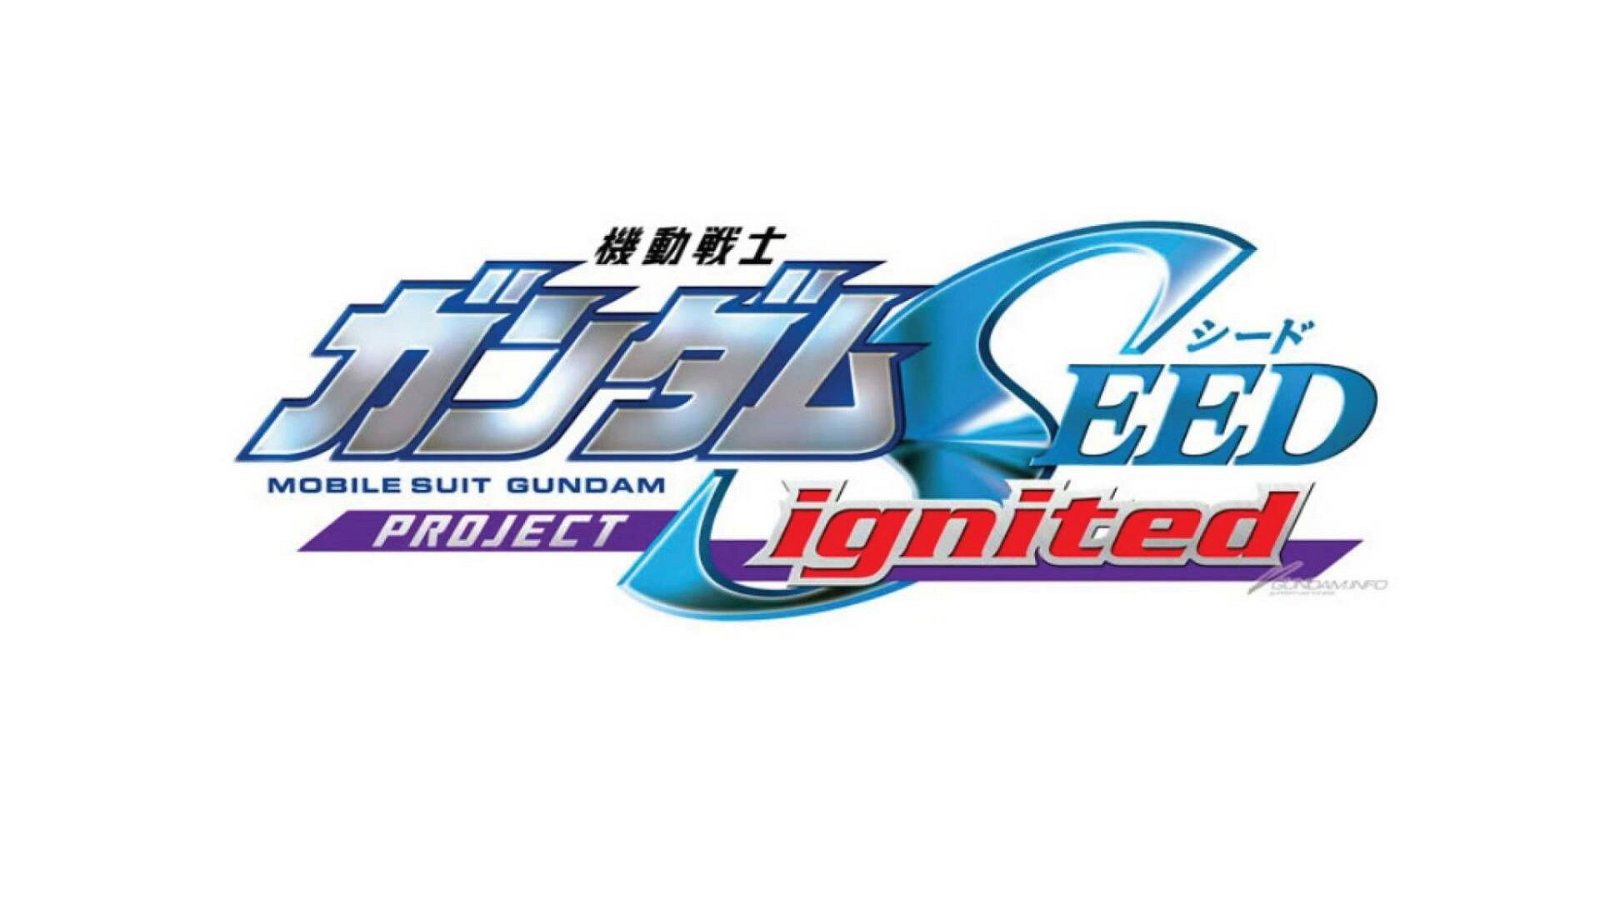 Immagine di Mobile Suit Gundam Seed: in arrivo un nuovo anime, un manga e un gioco della saga Gundam Seed